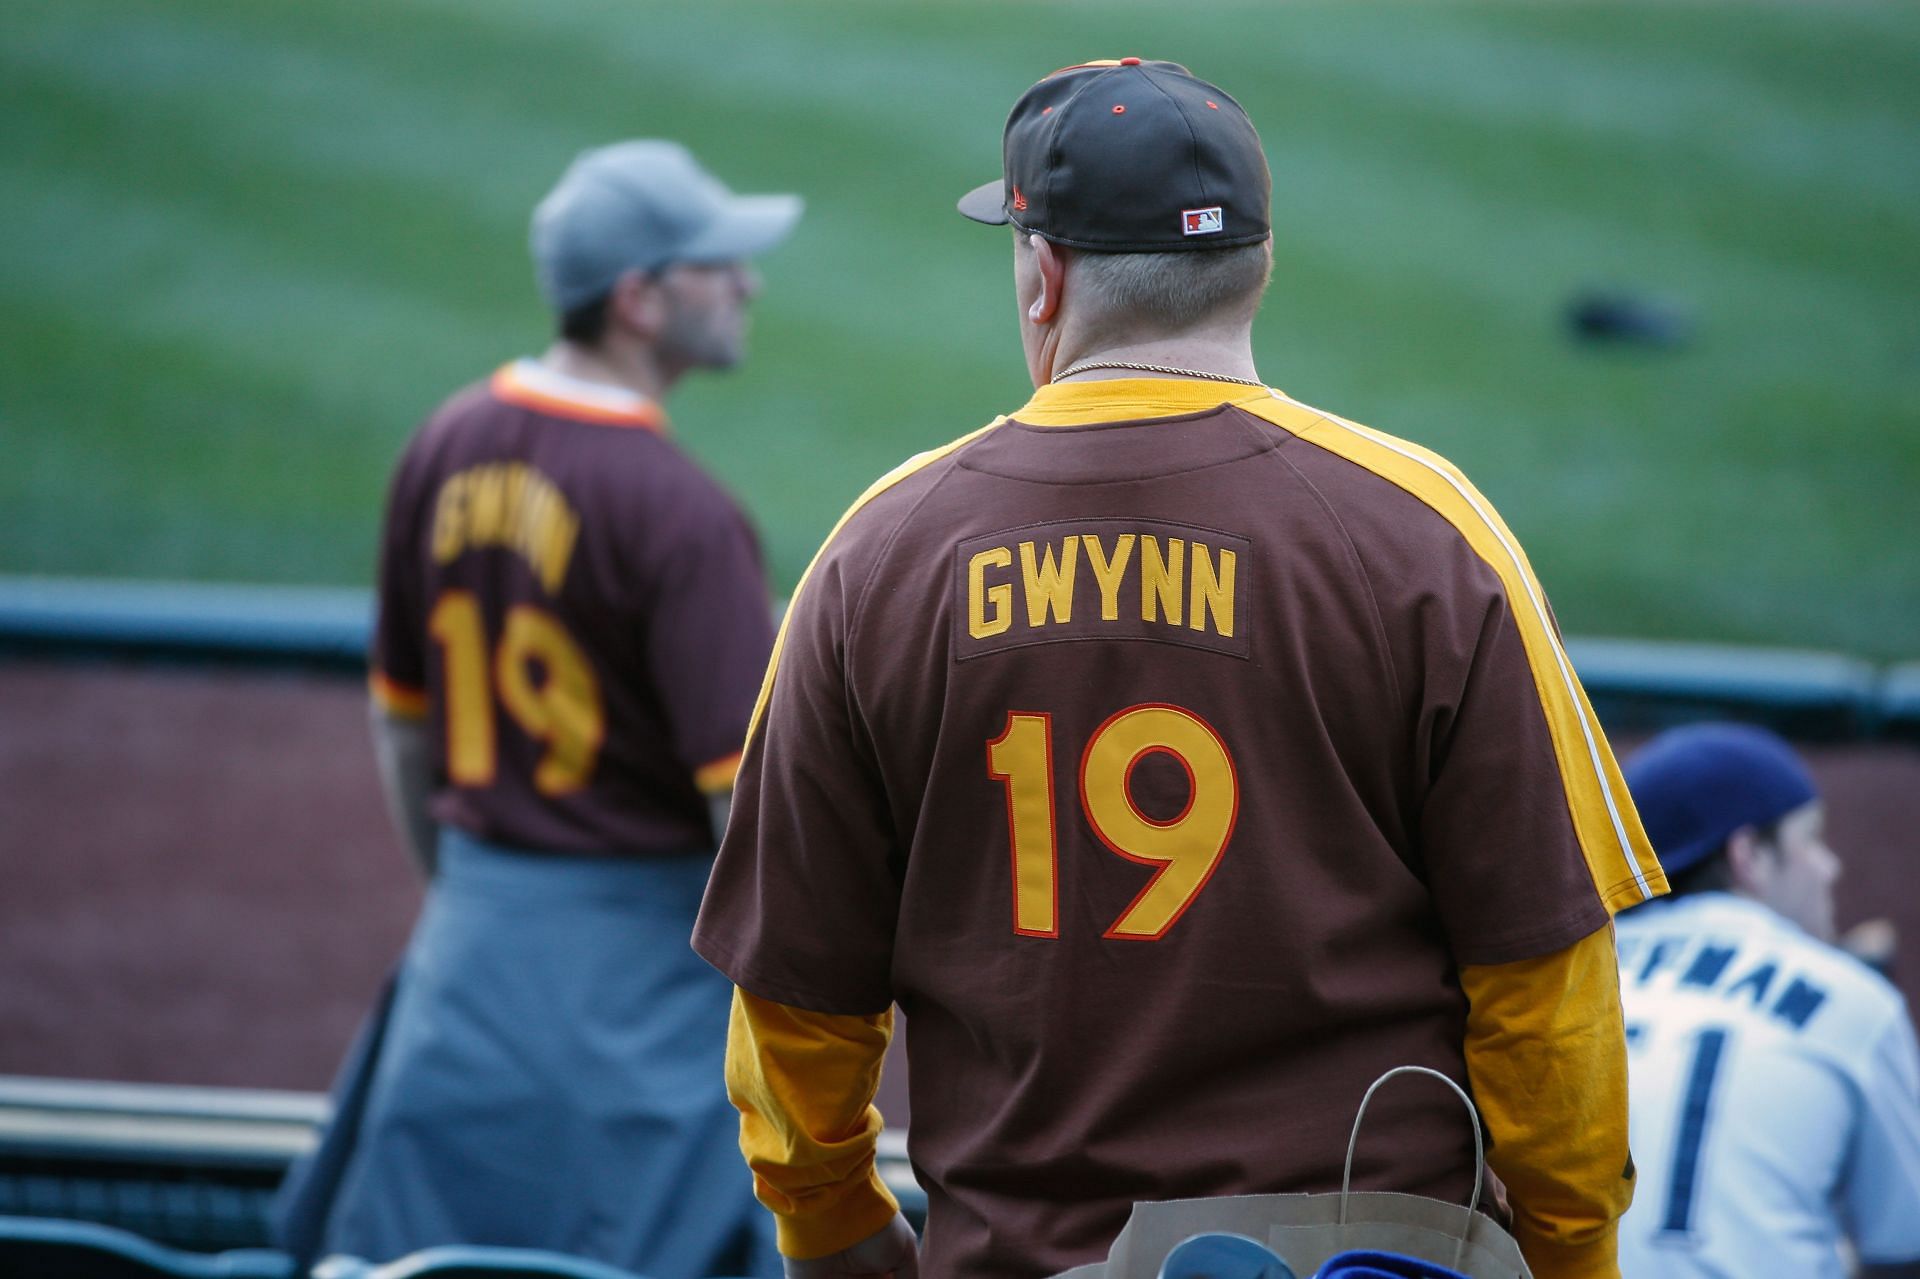 Tony Gwynn, Baseball Wiki